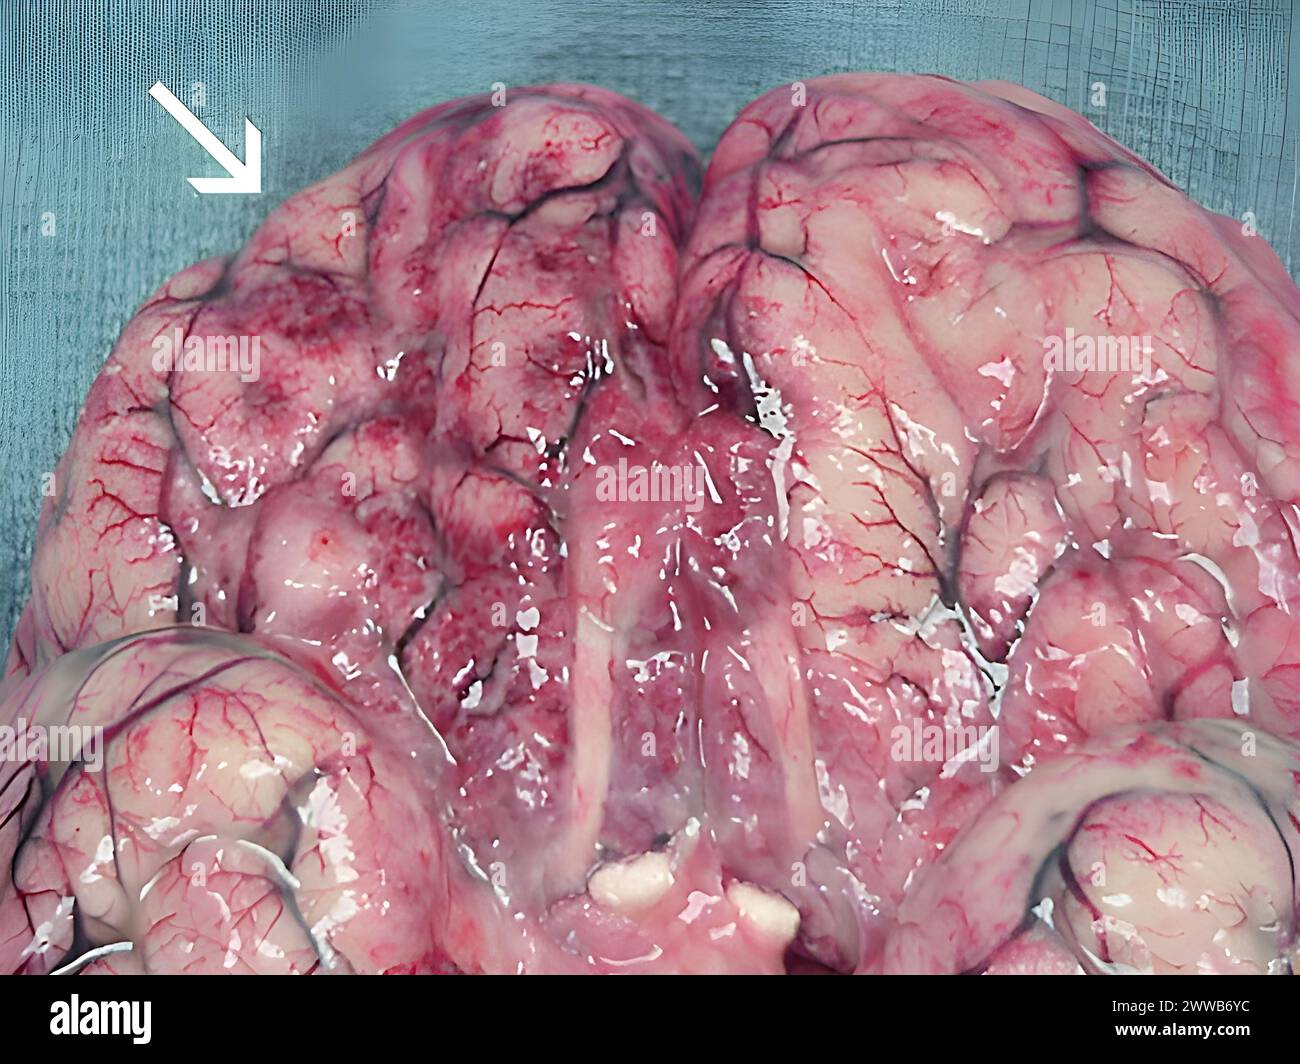 Ausgedehnte Blutungen und Nekrosen liegen im Gehirn vor, vor allem in der Frontalrinde. Stockfoto